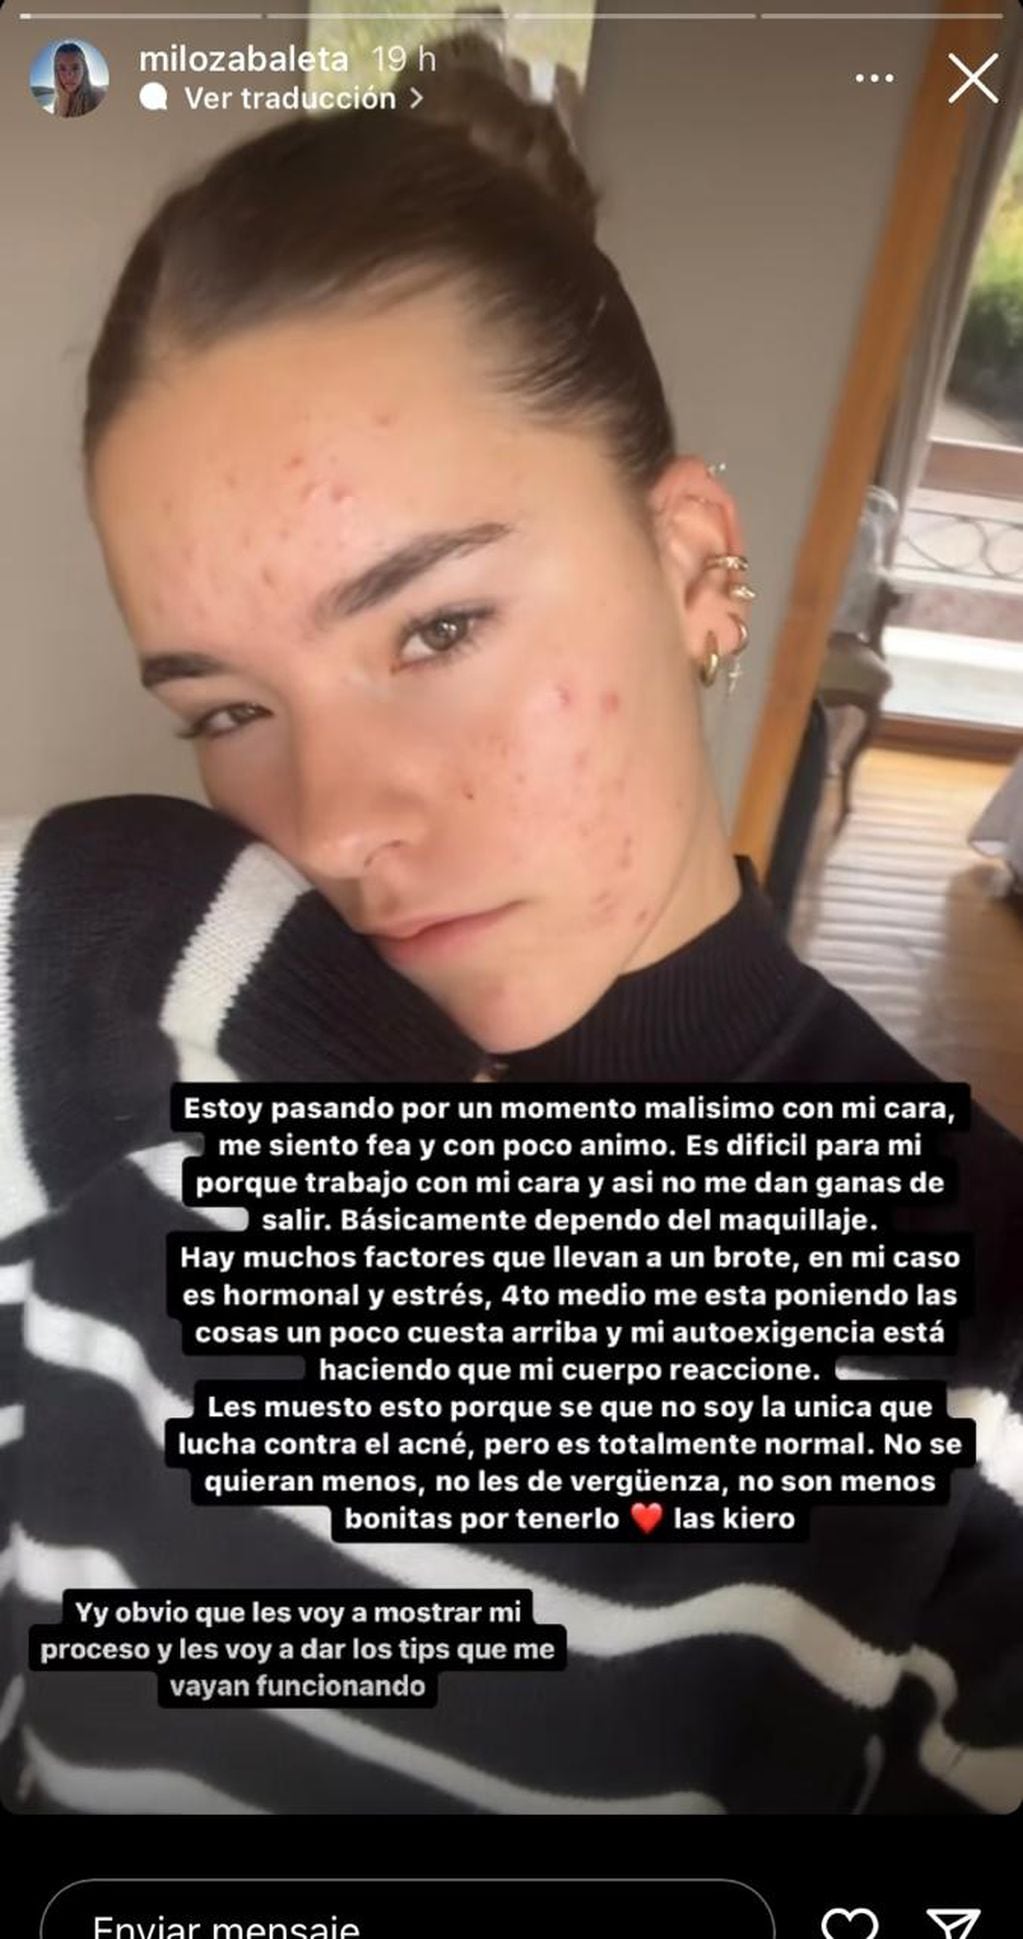 Hija de Jorge Zabaleta publicó cómo quedó su rostro debido al estrés: “Me siento fea y con poco ánimo”